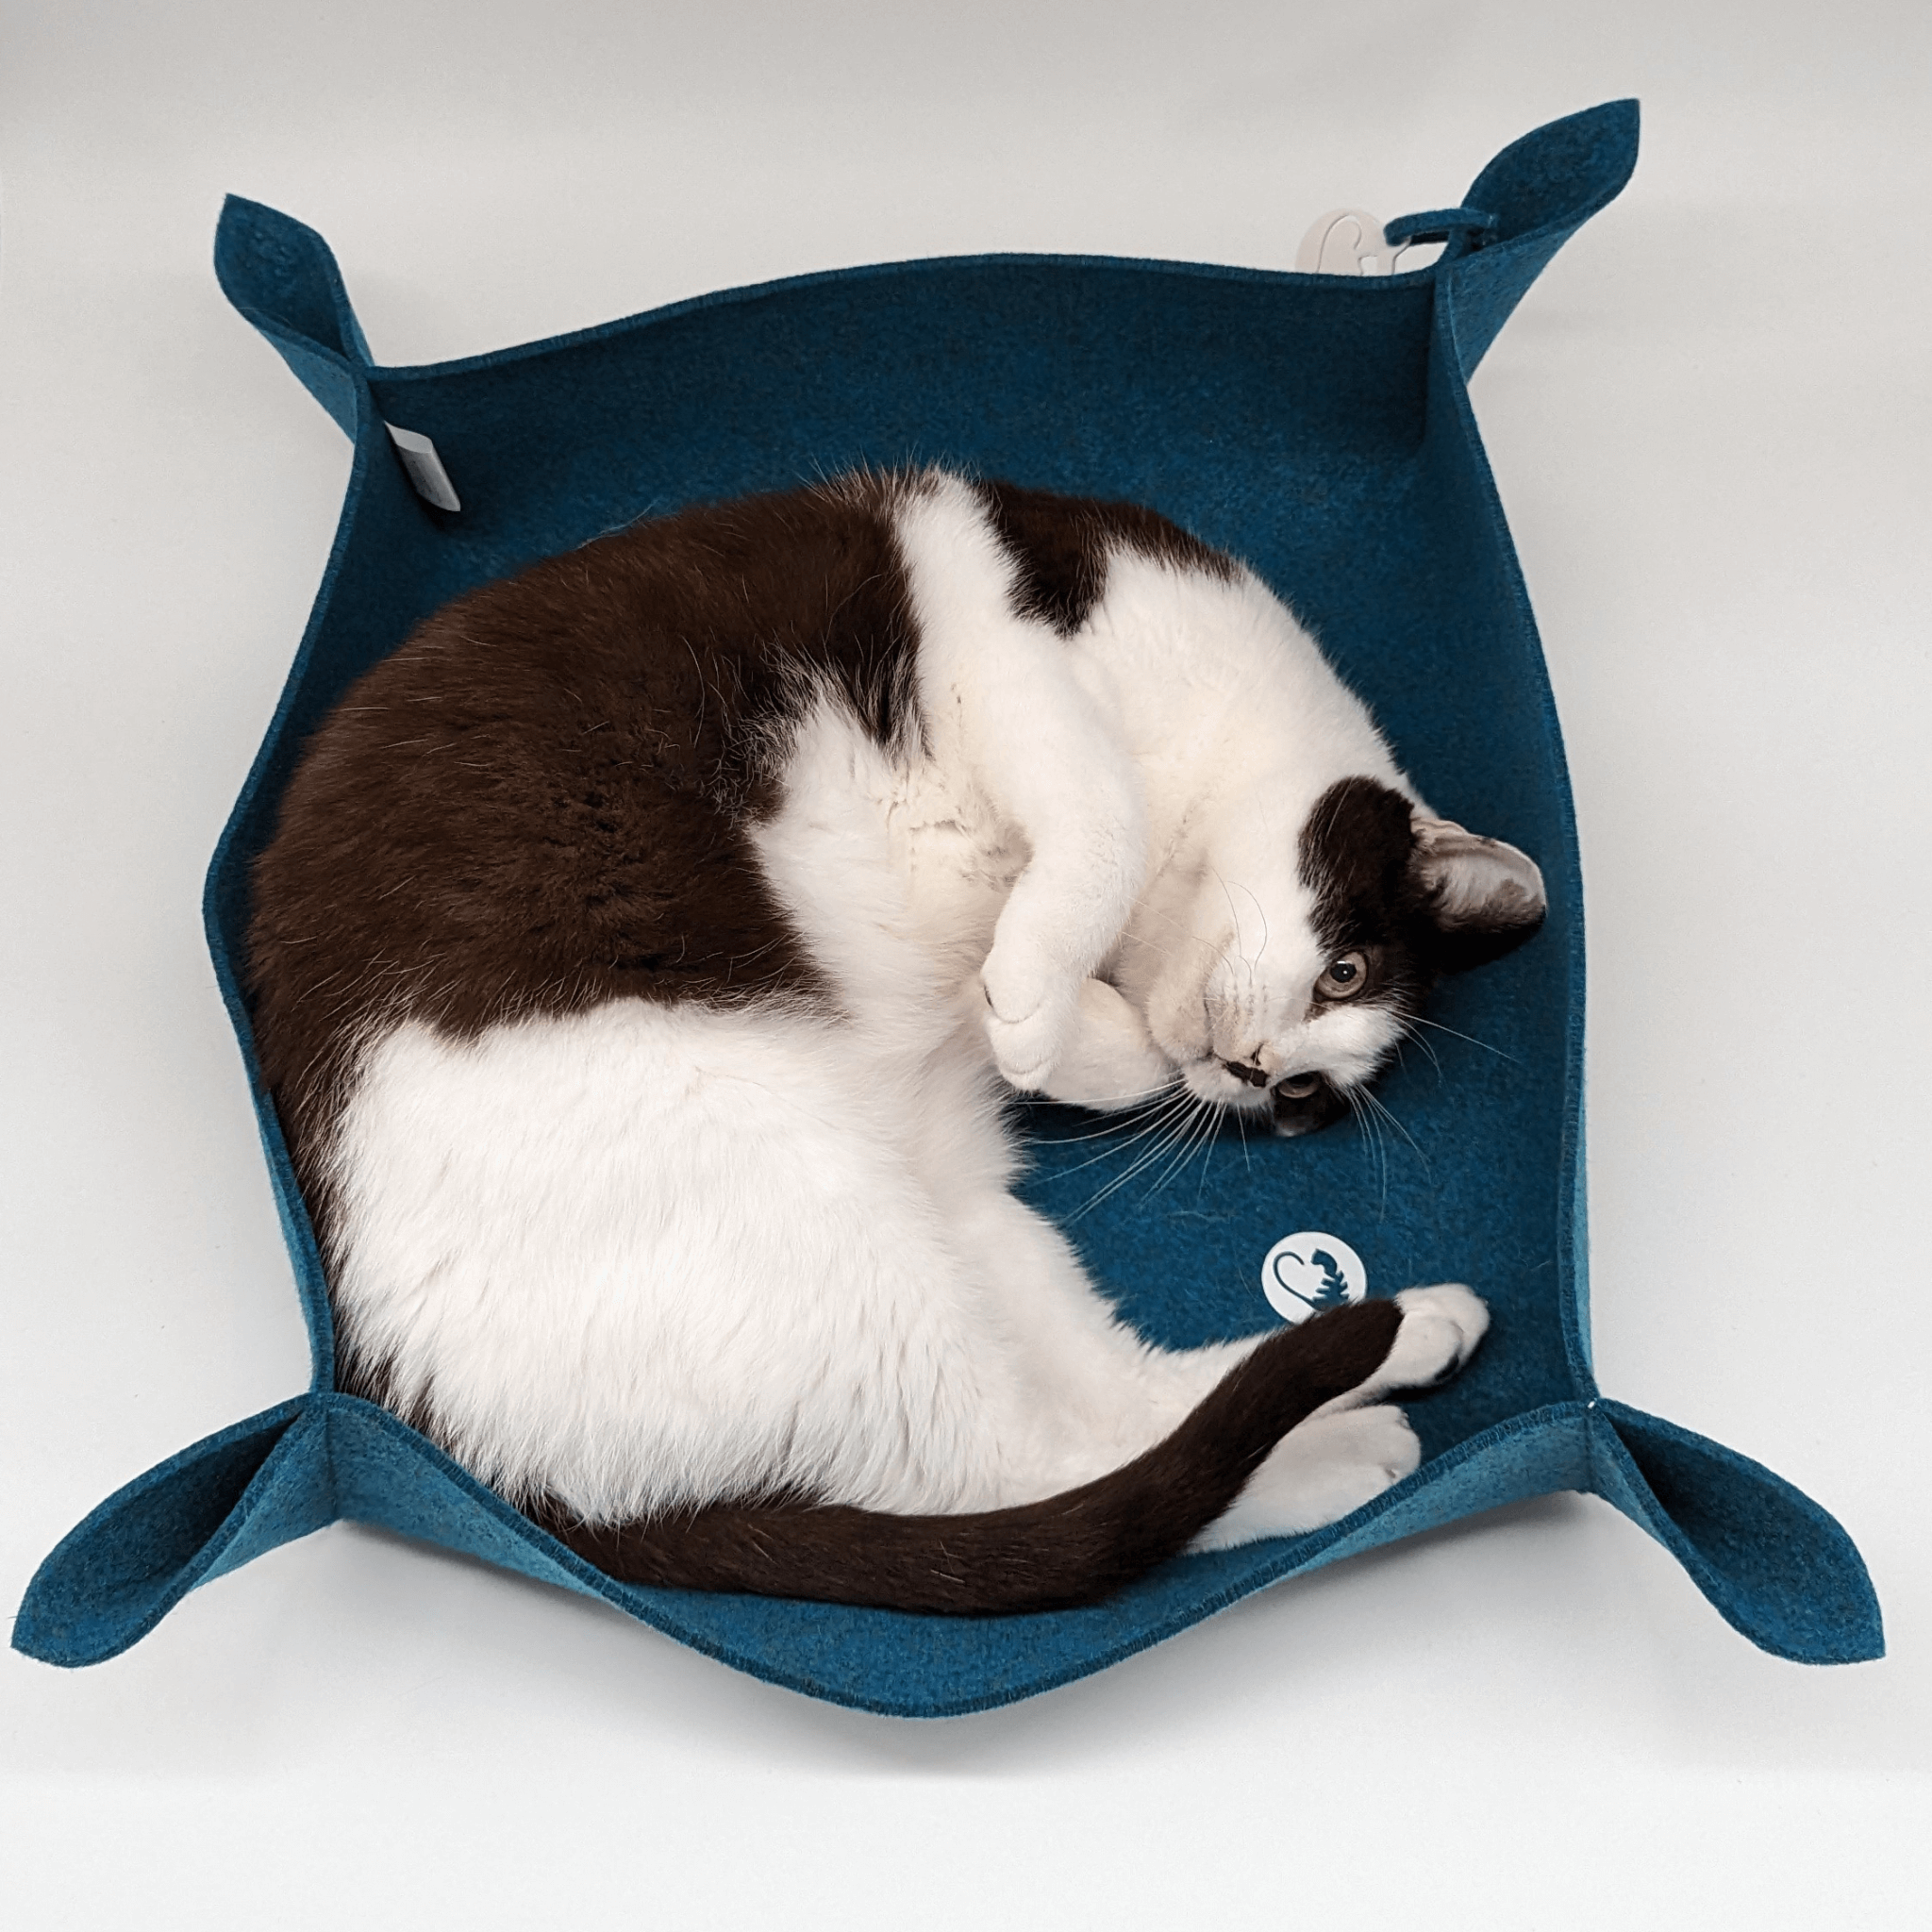 Katzenbett mit erhöhten Rand - fürs eine glücklichere Katze